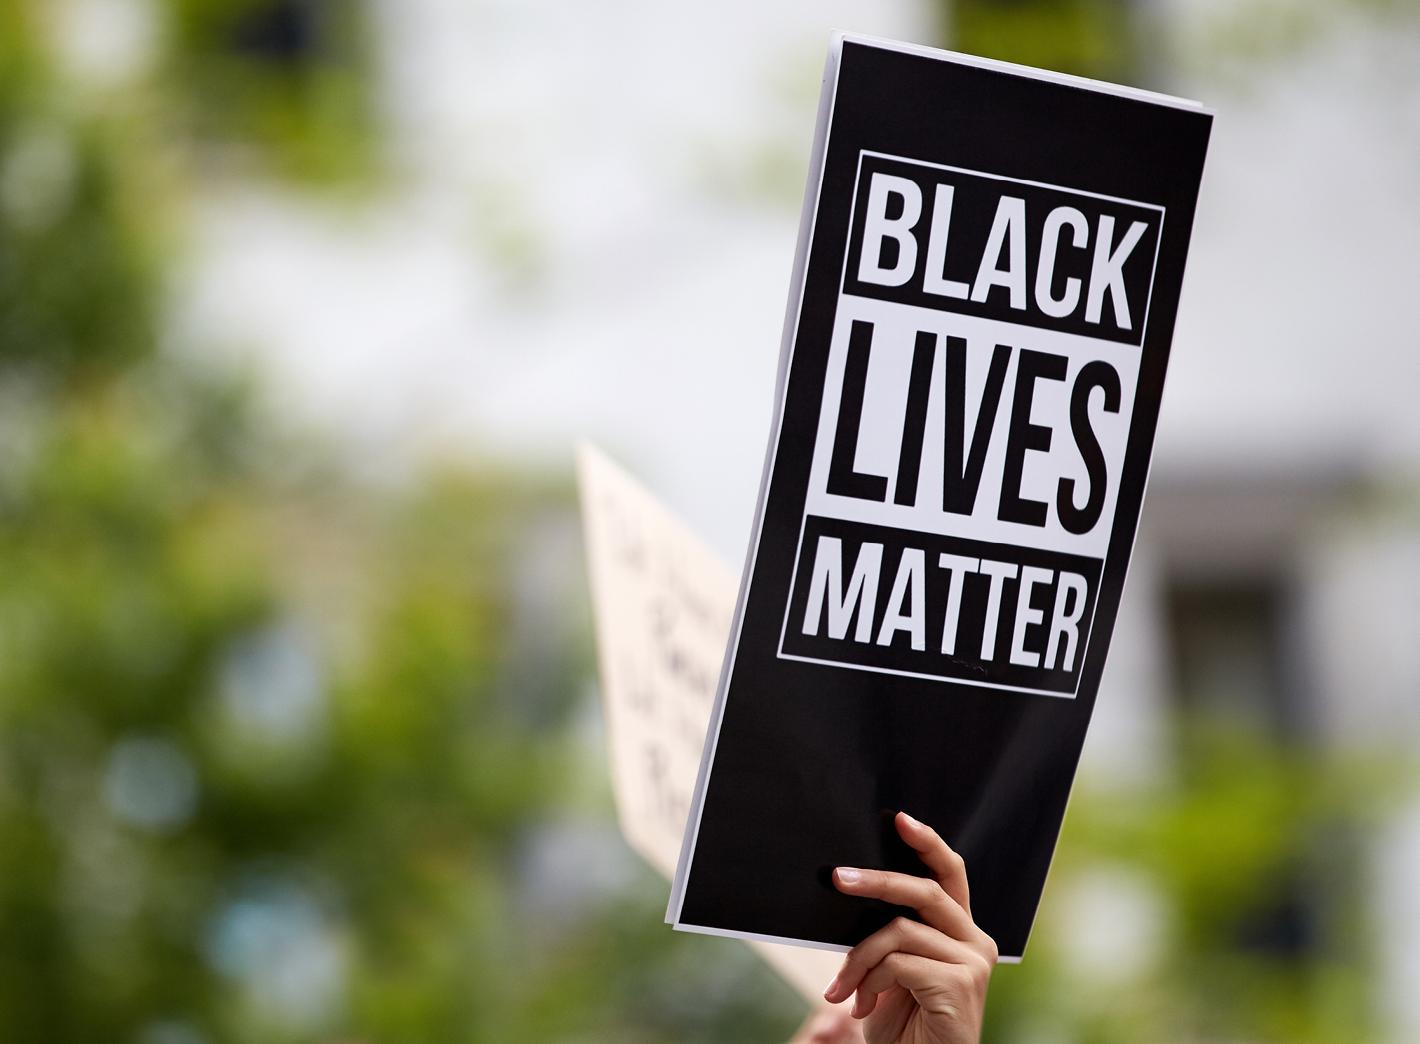 "Black Lives Matter"